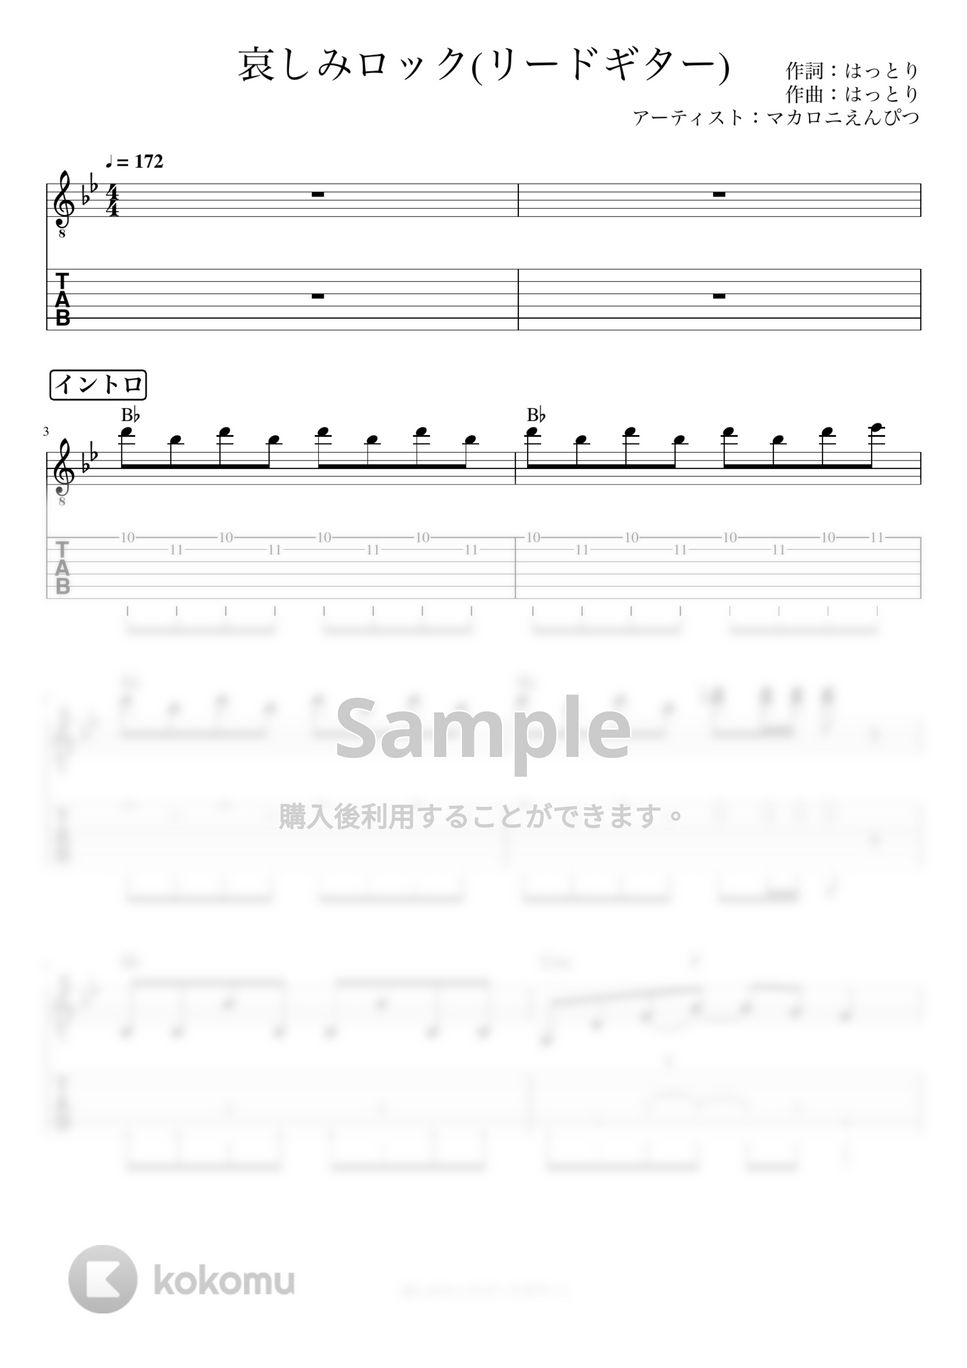 マカロニえんぴつ - 哀しみロック (リードギター) by J-ROCKチャンネル